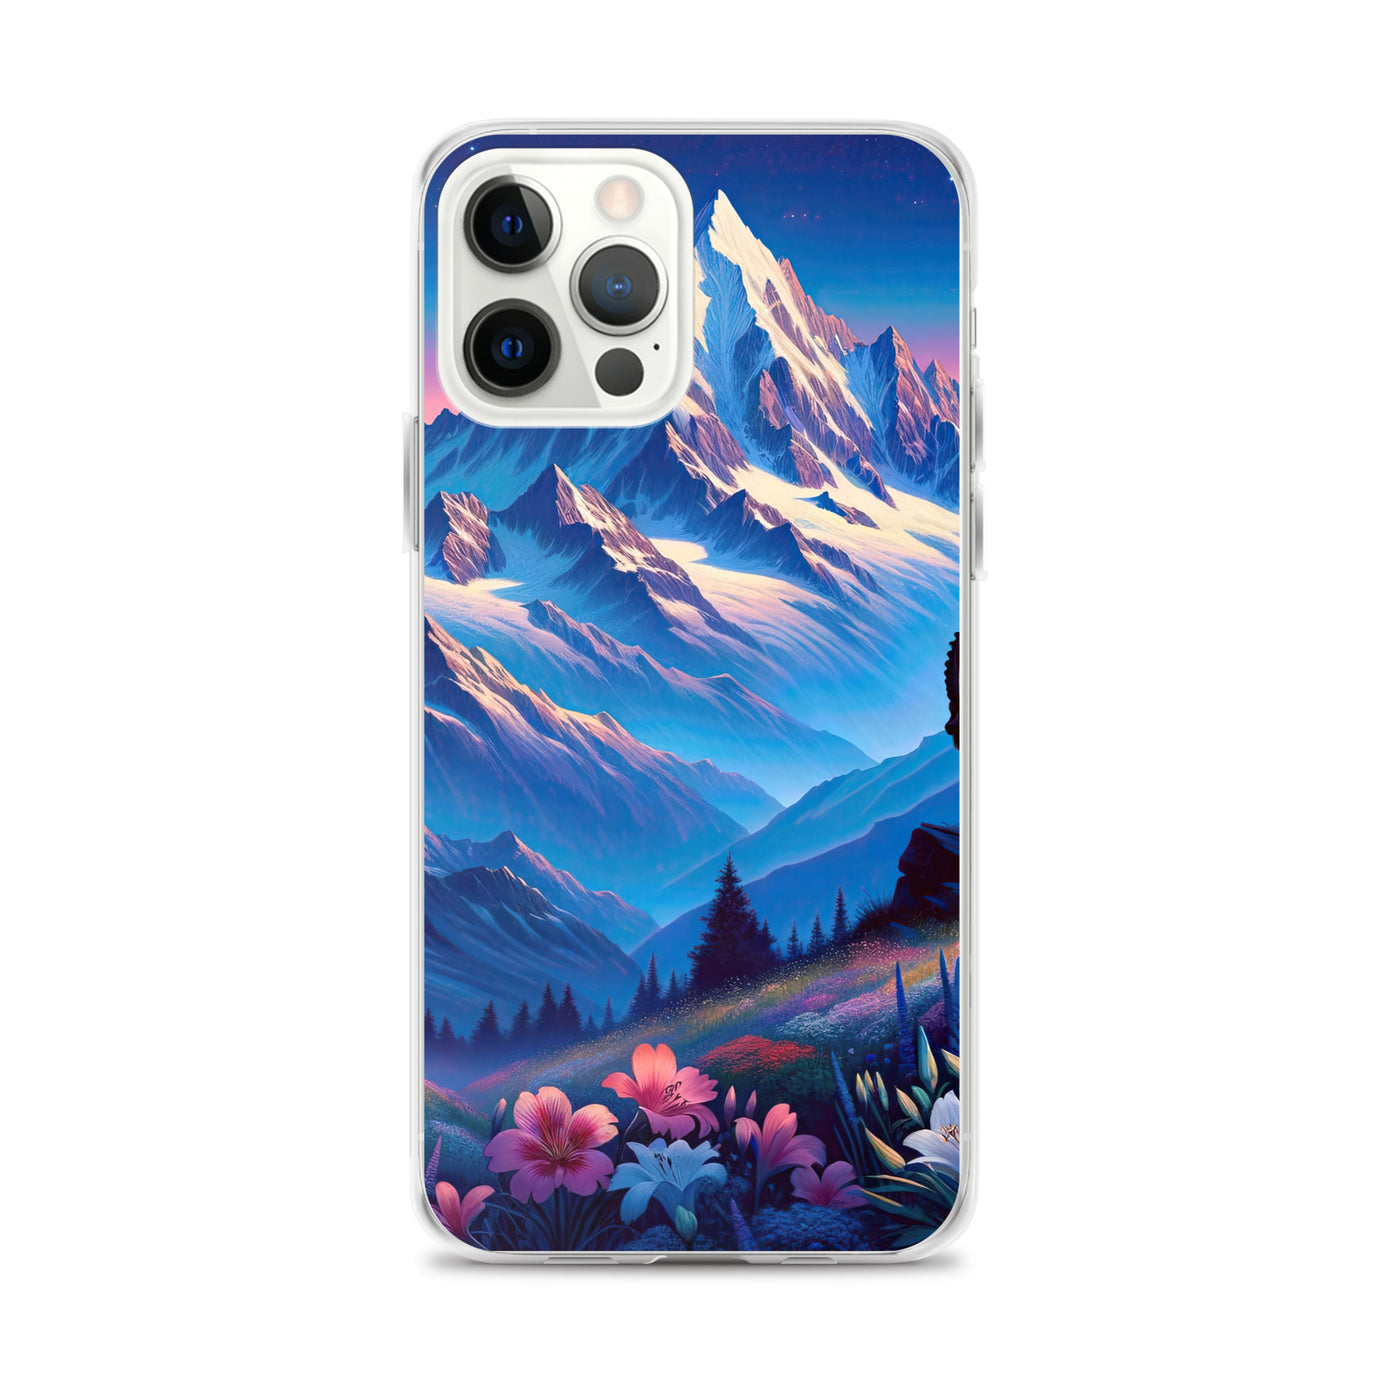 Steinbock bei Dämmerung in den Alpen, sonnengeküsste Schneegipfel - iPhone Schutzhülle (durchsichtig) berge xxx yyy zzz iPhone 12 Pro Max